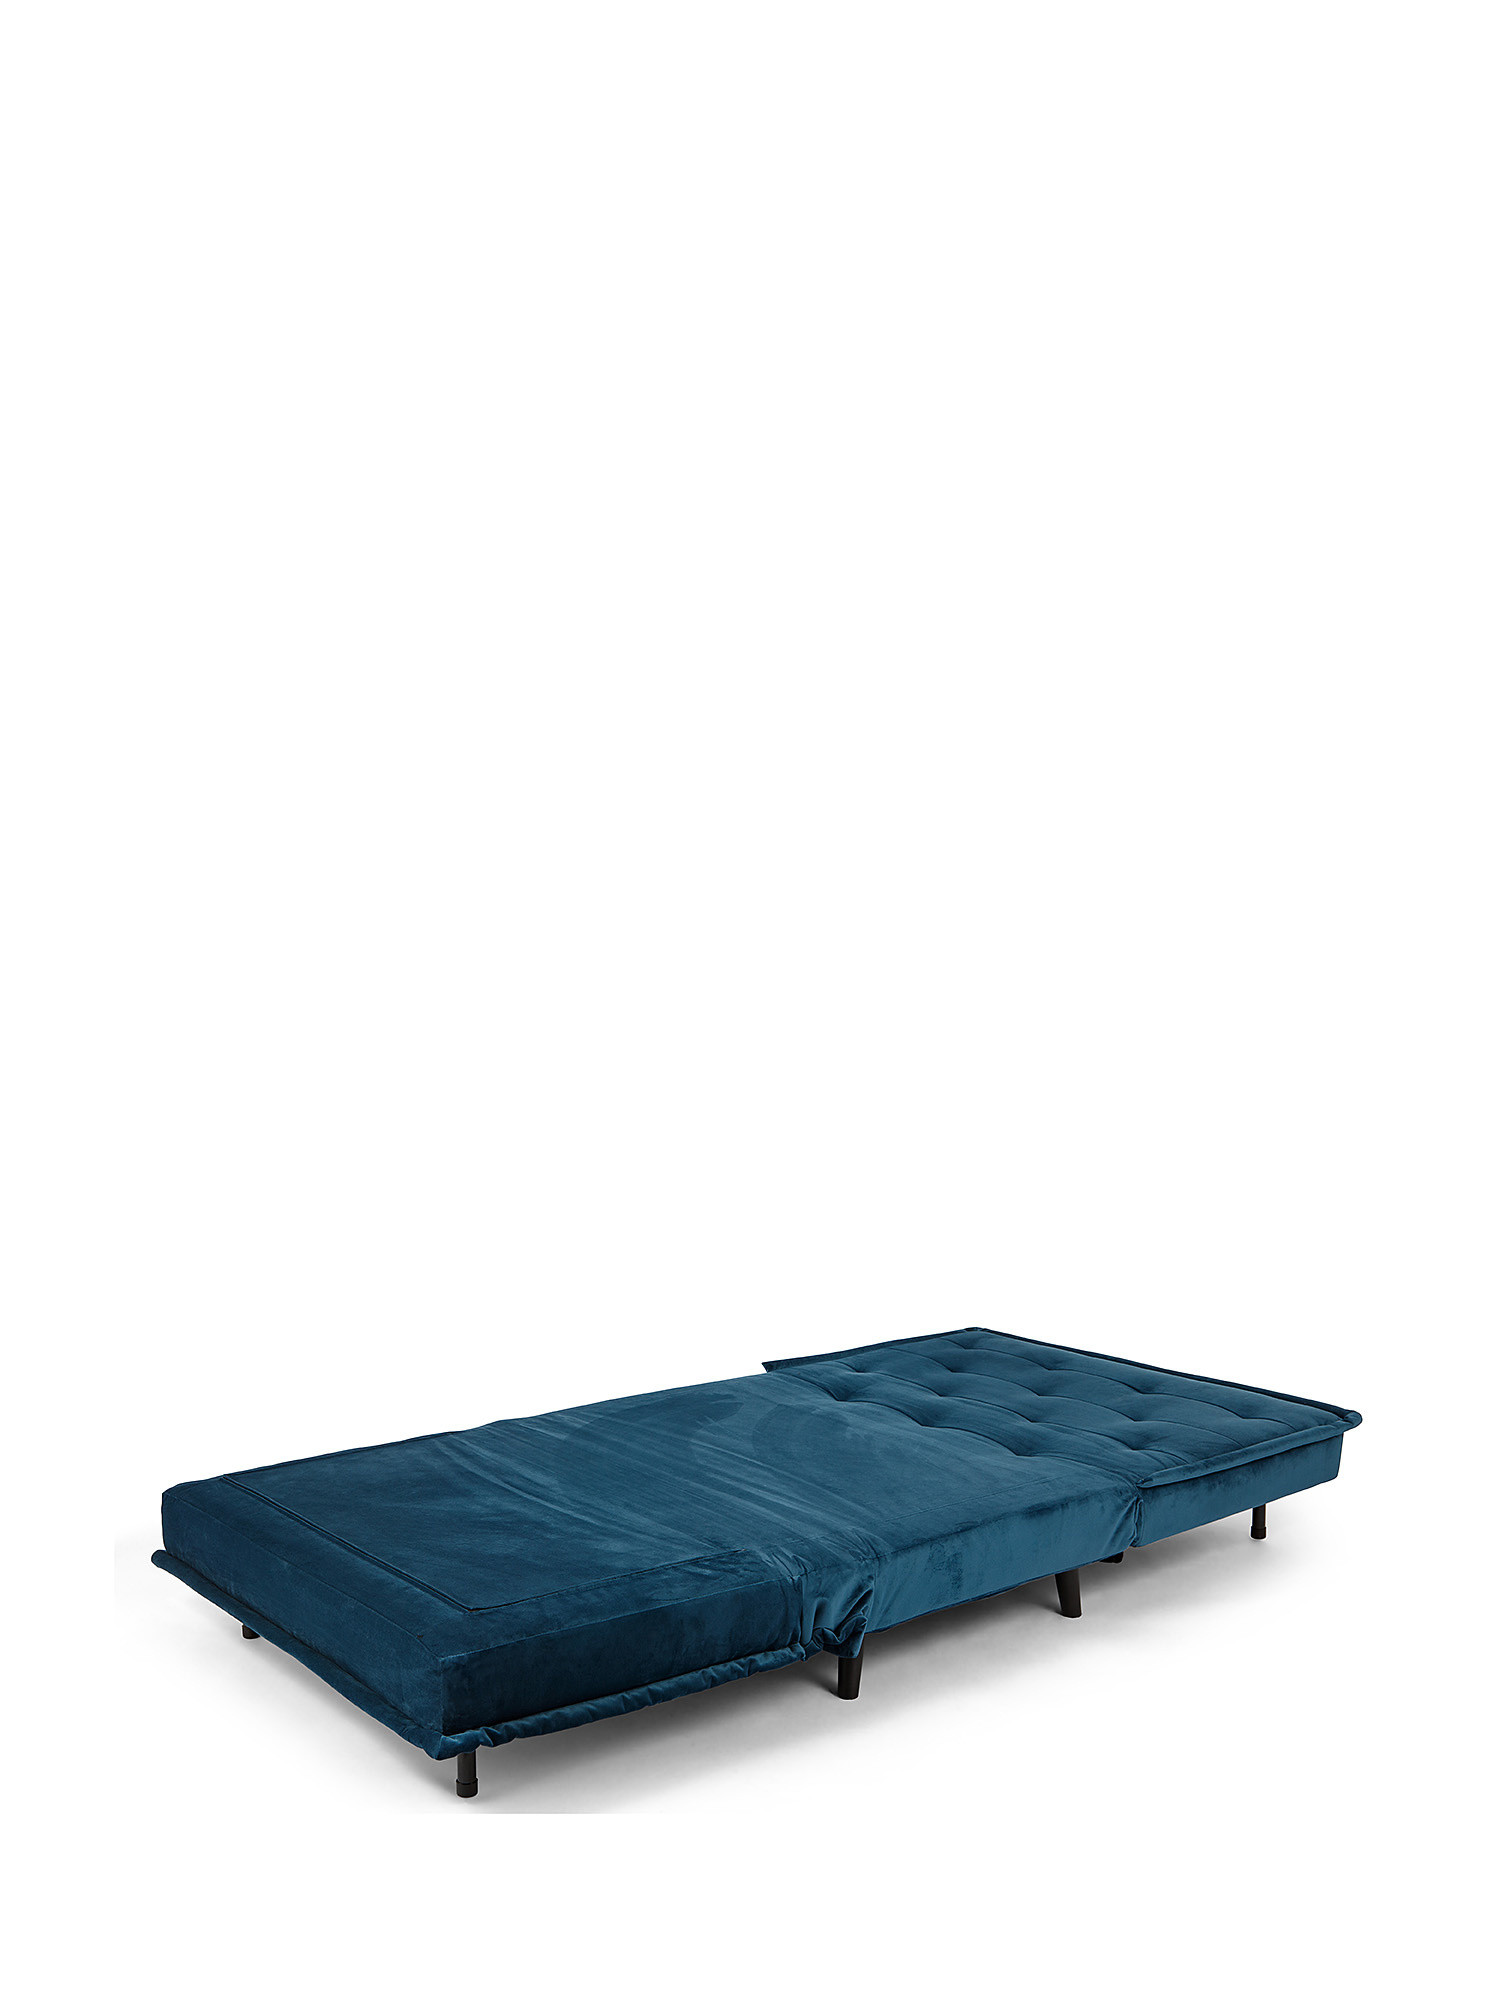 Guest velvet sofa bed, Green, large image number 2